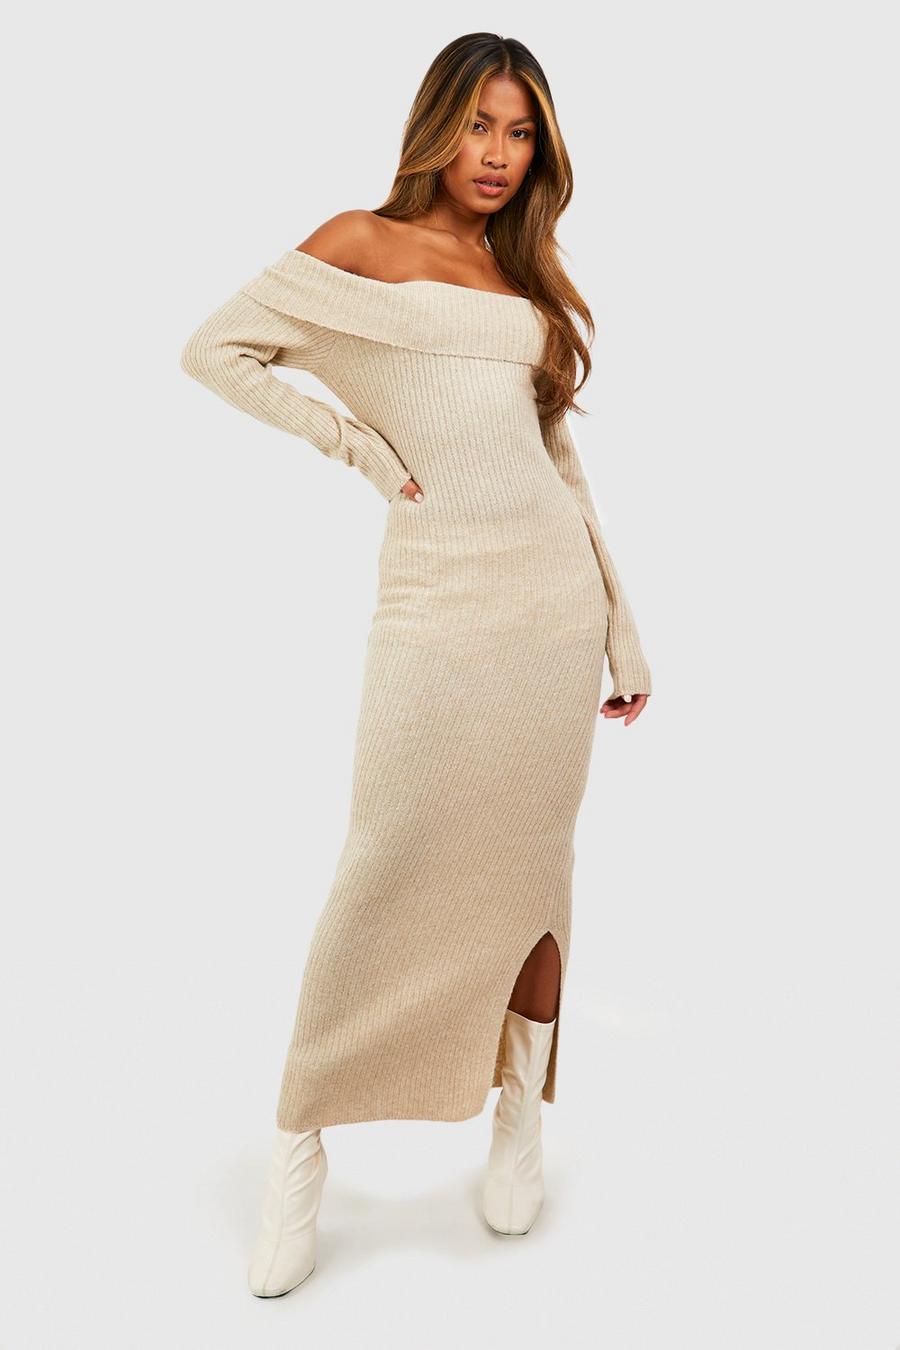 Stone beige Soft Knit Off The Shoulder Maxi Jupmer Dress